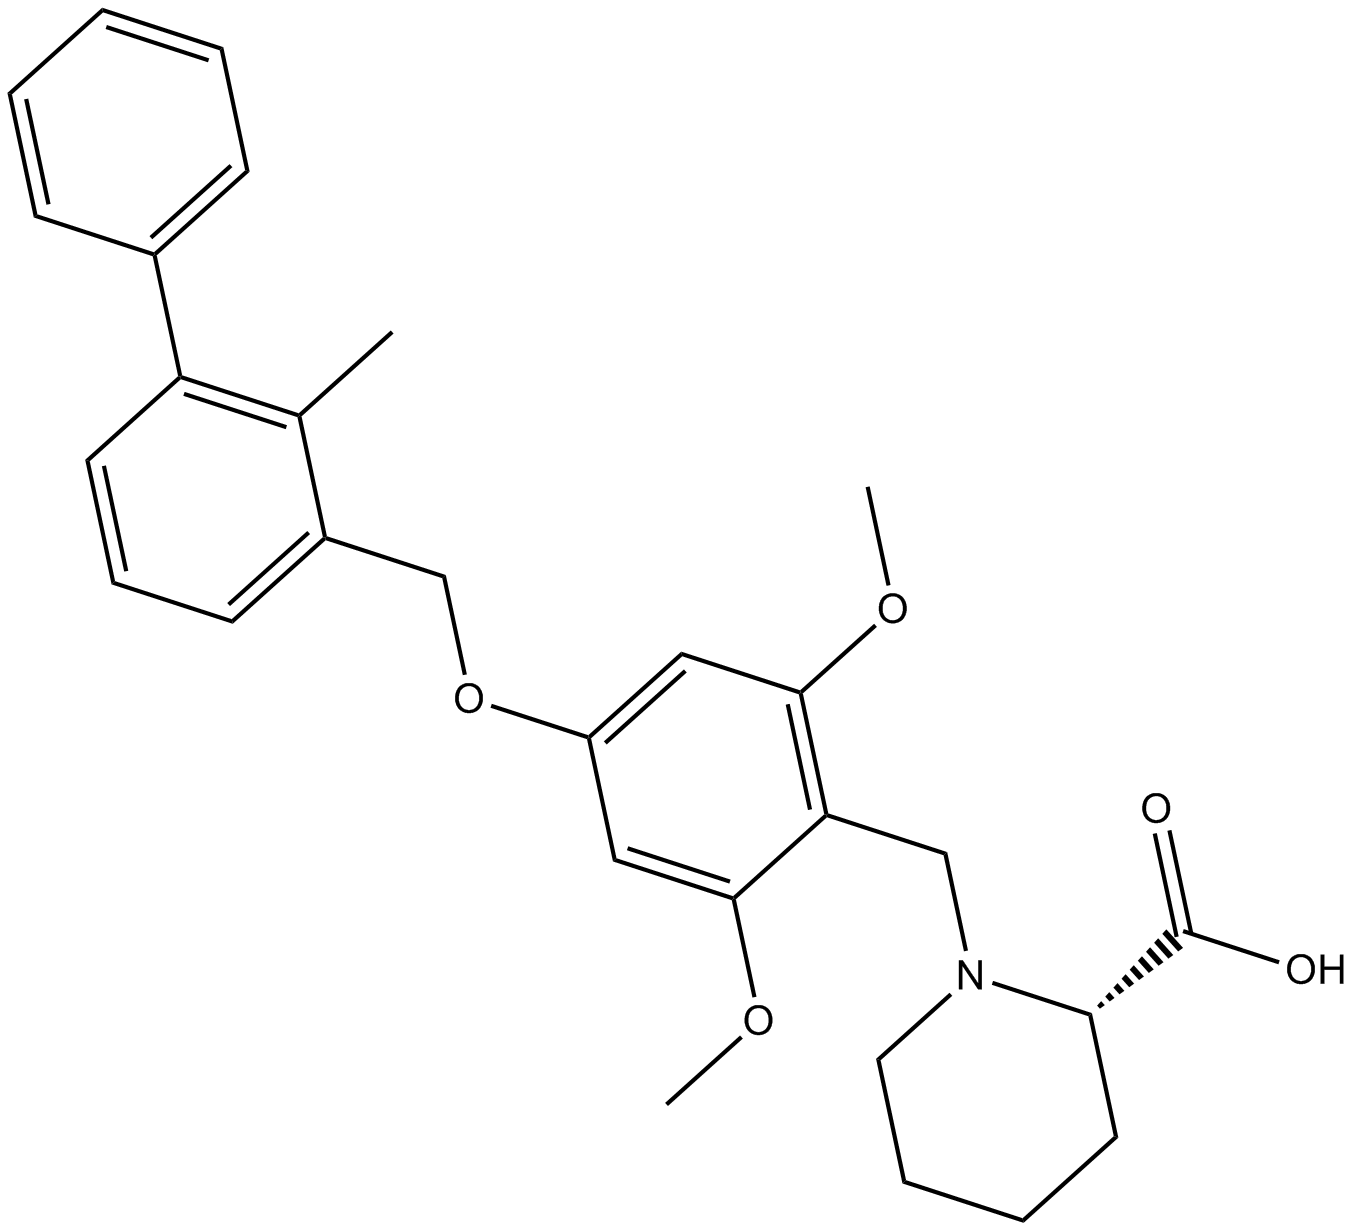 PD-1/PD-L1 inhibitor 1